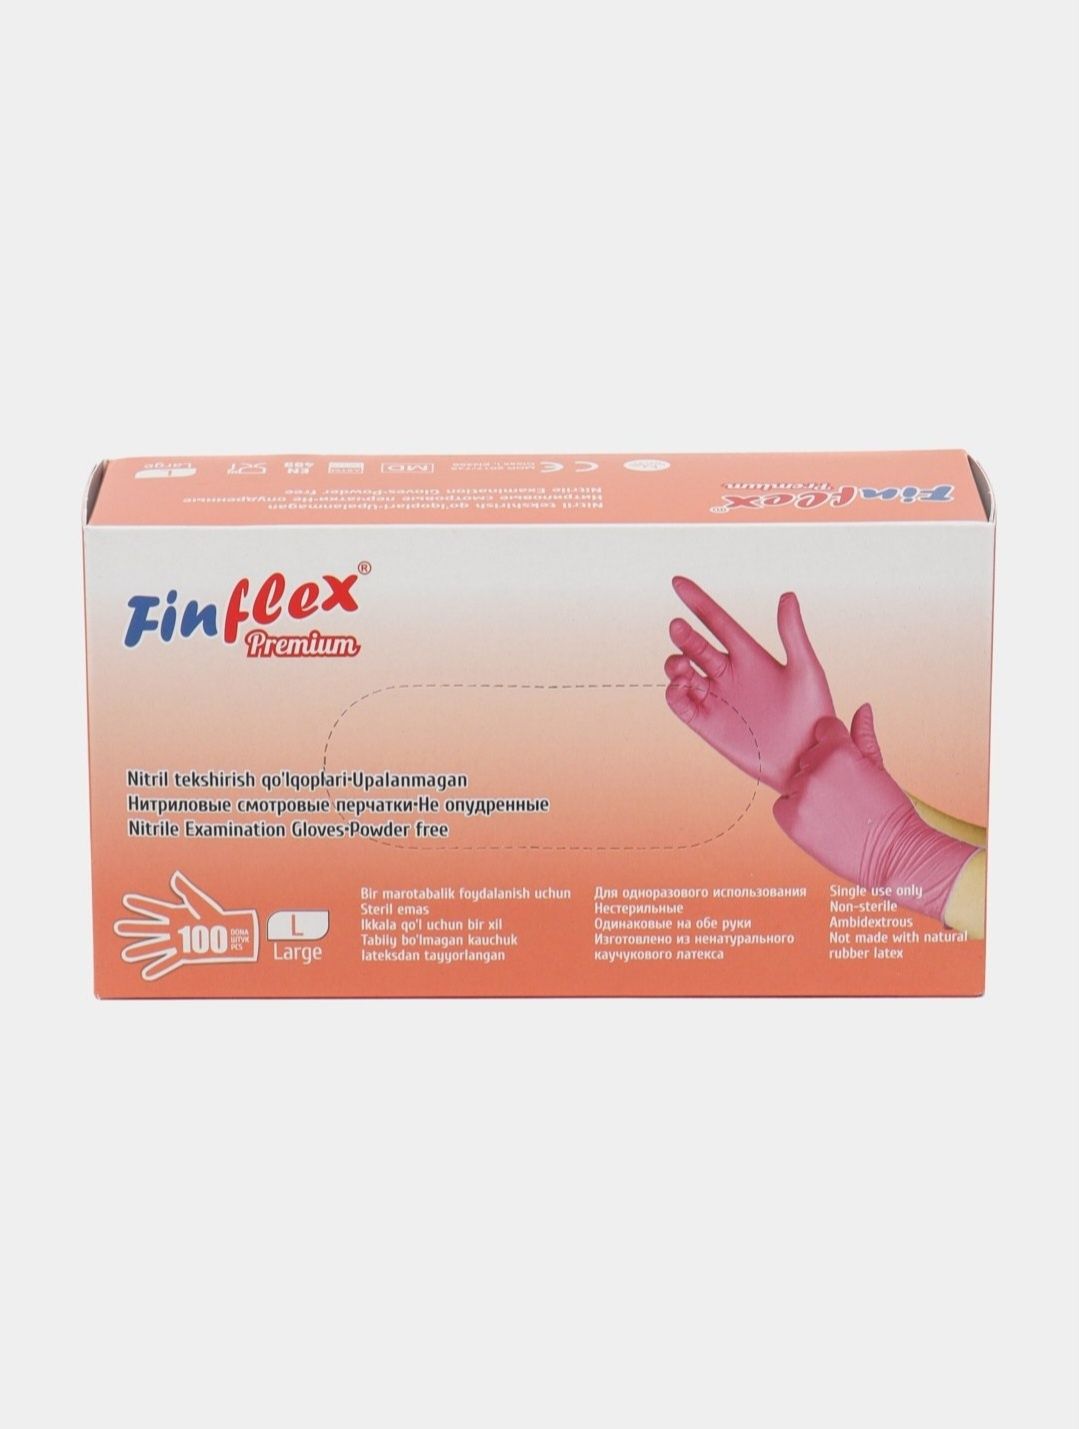 Дешёво продаётся перчатки Finlflex L размер